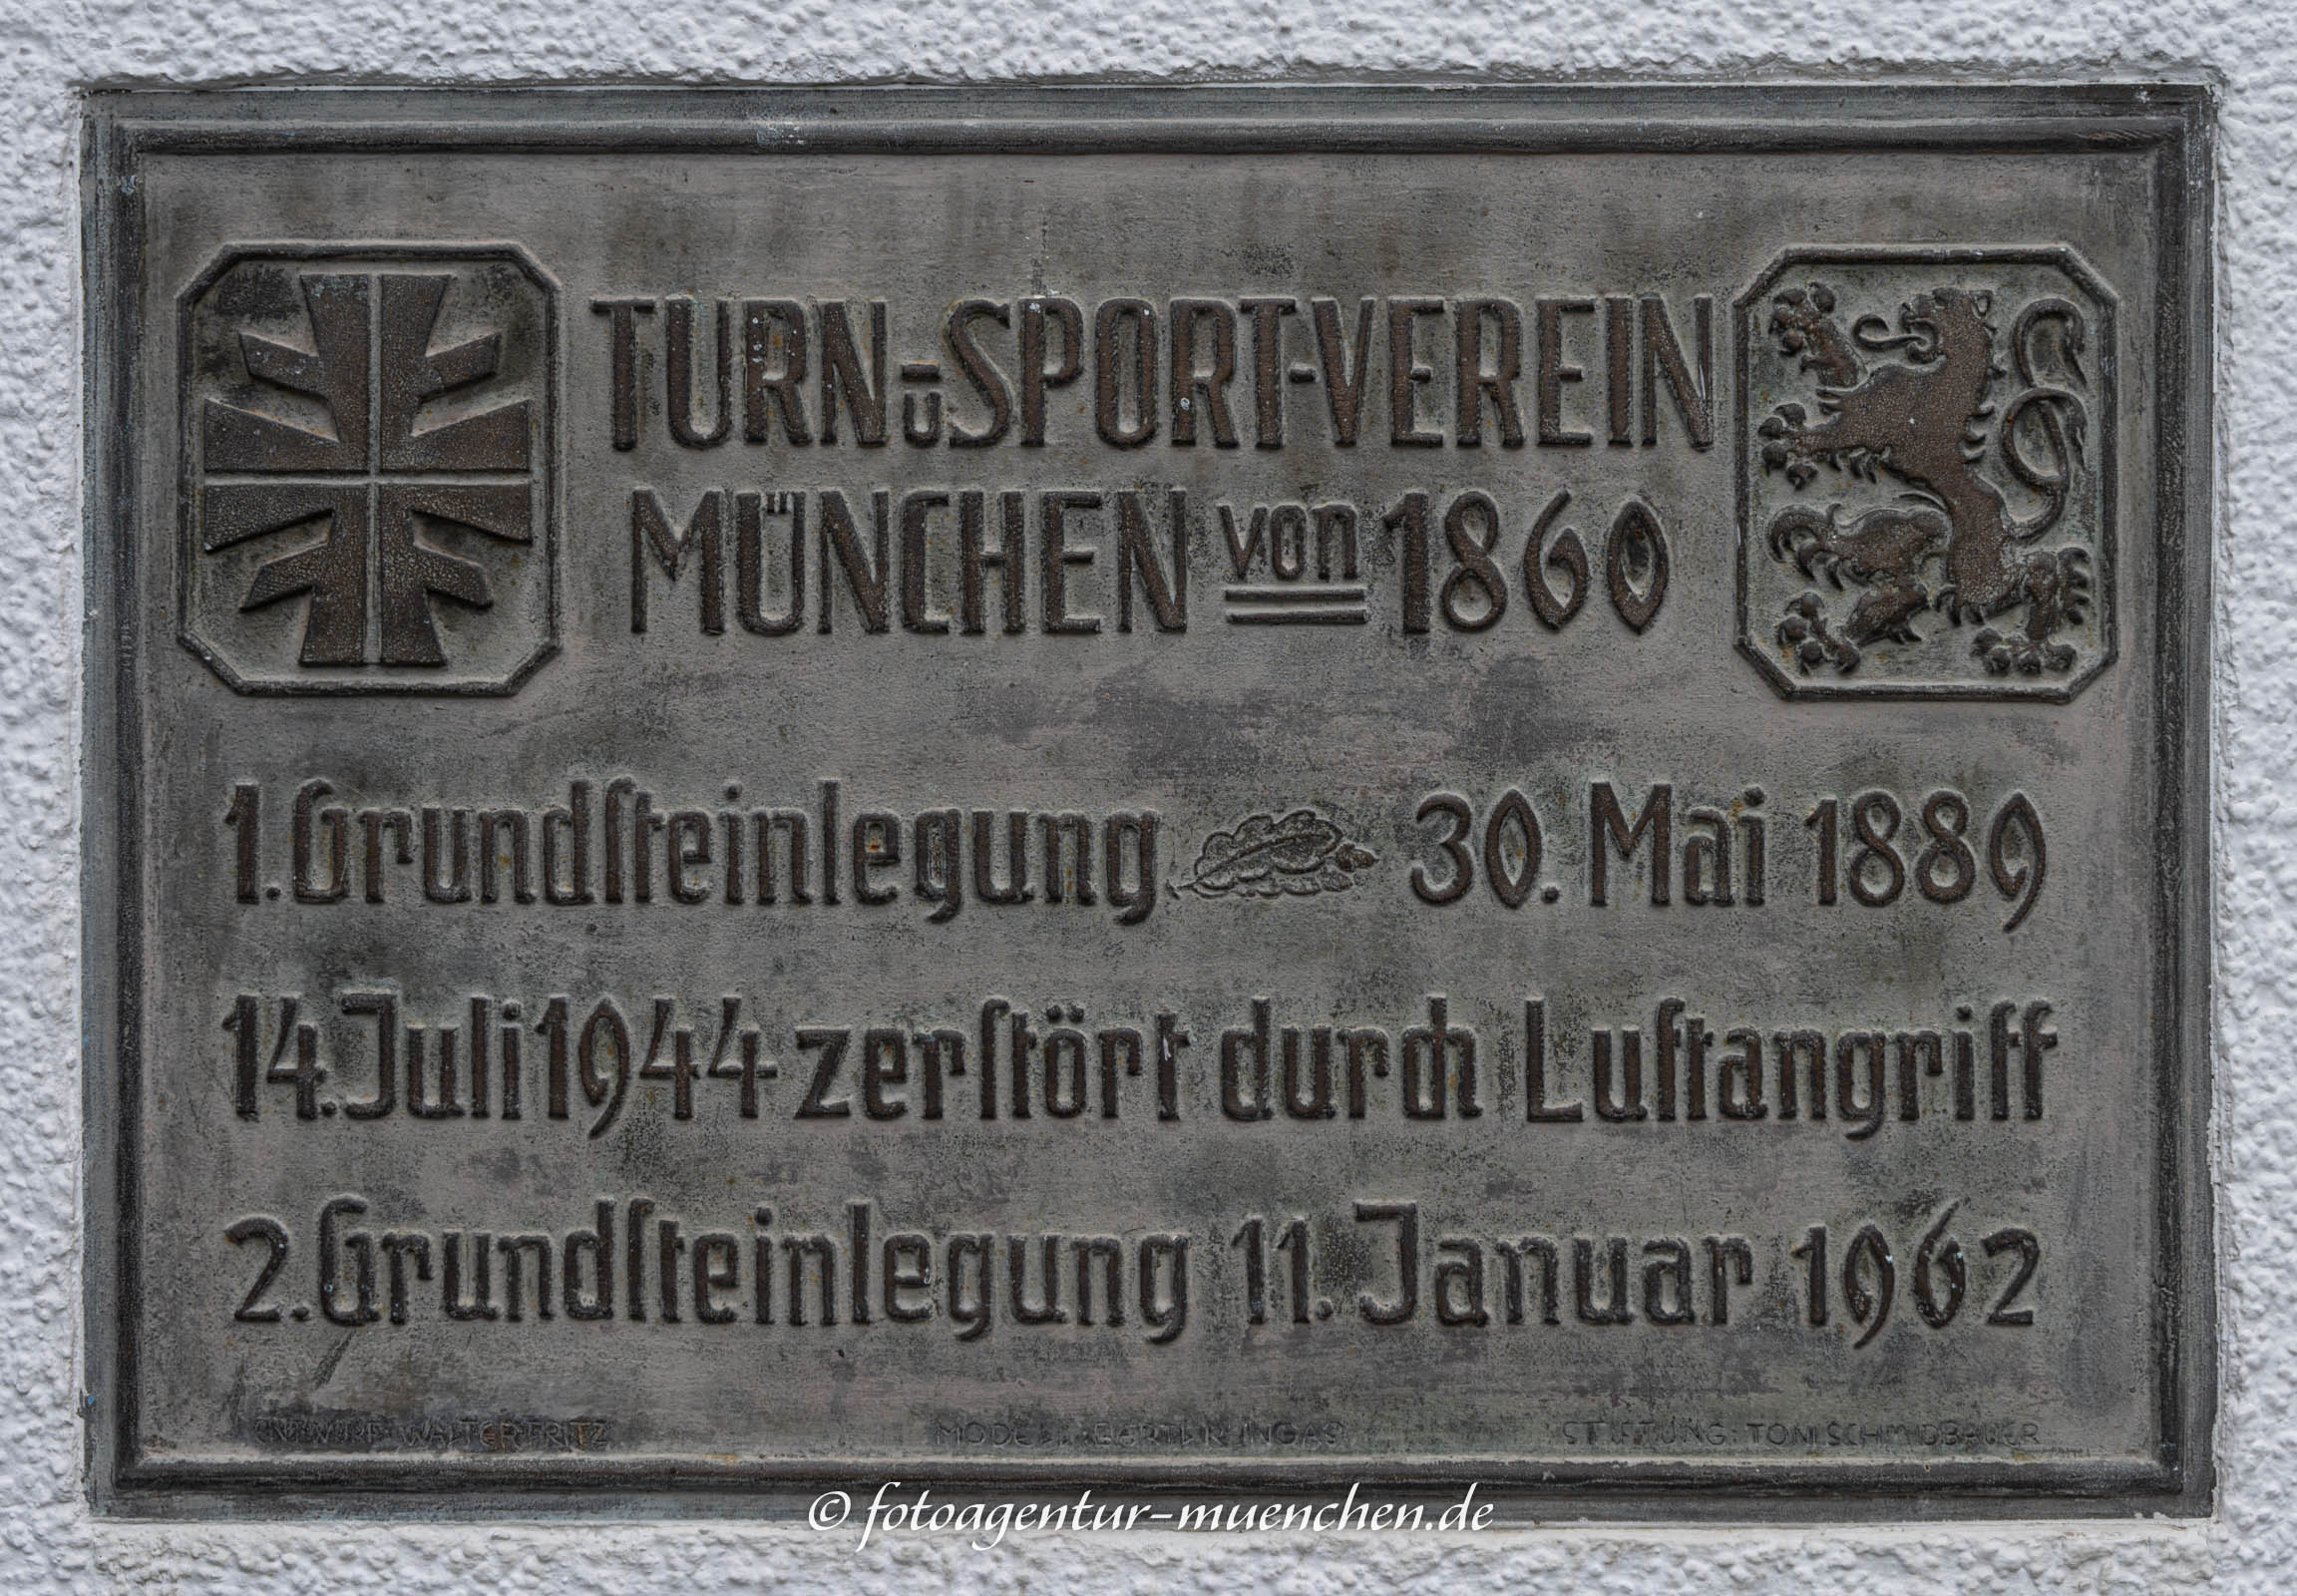 Turn- und Sportverein München von 1860